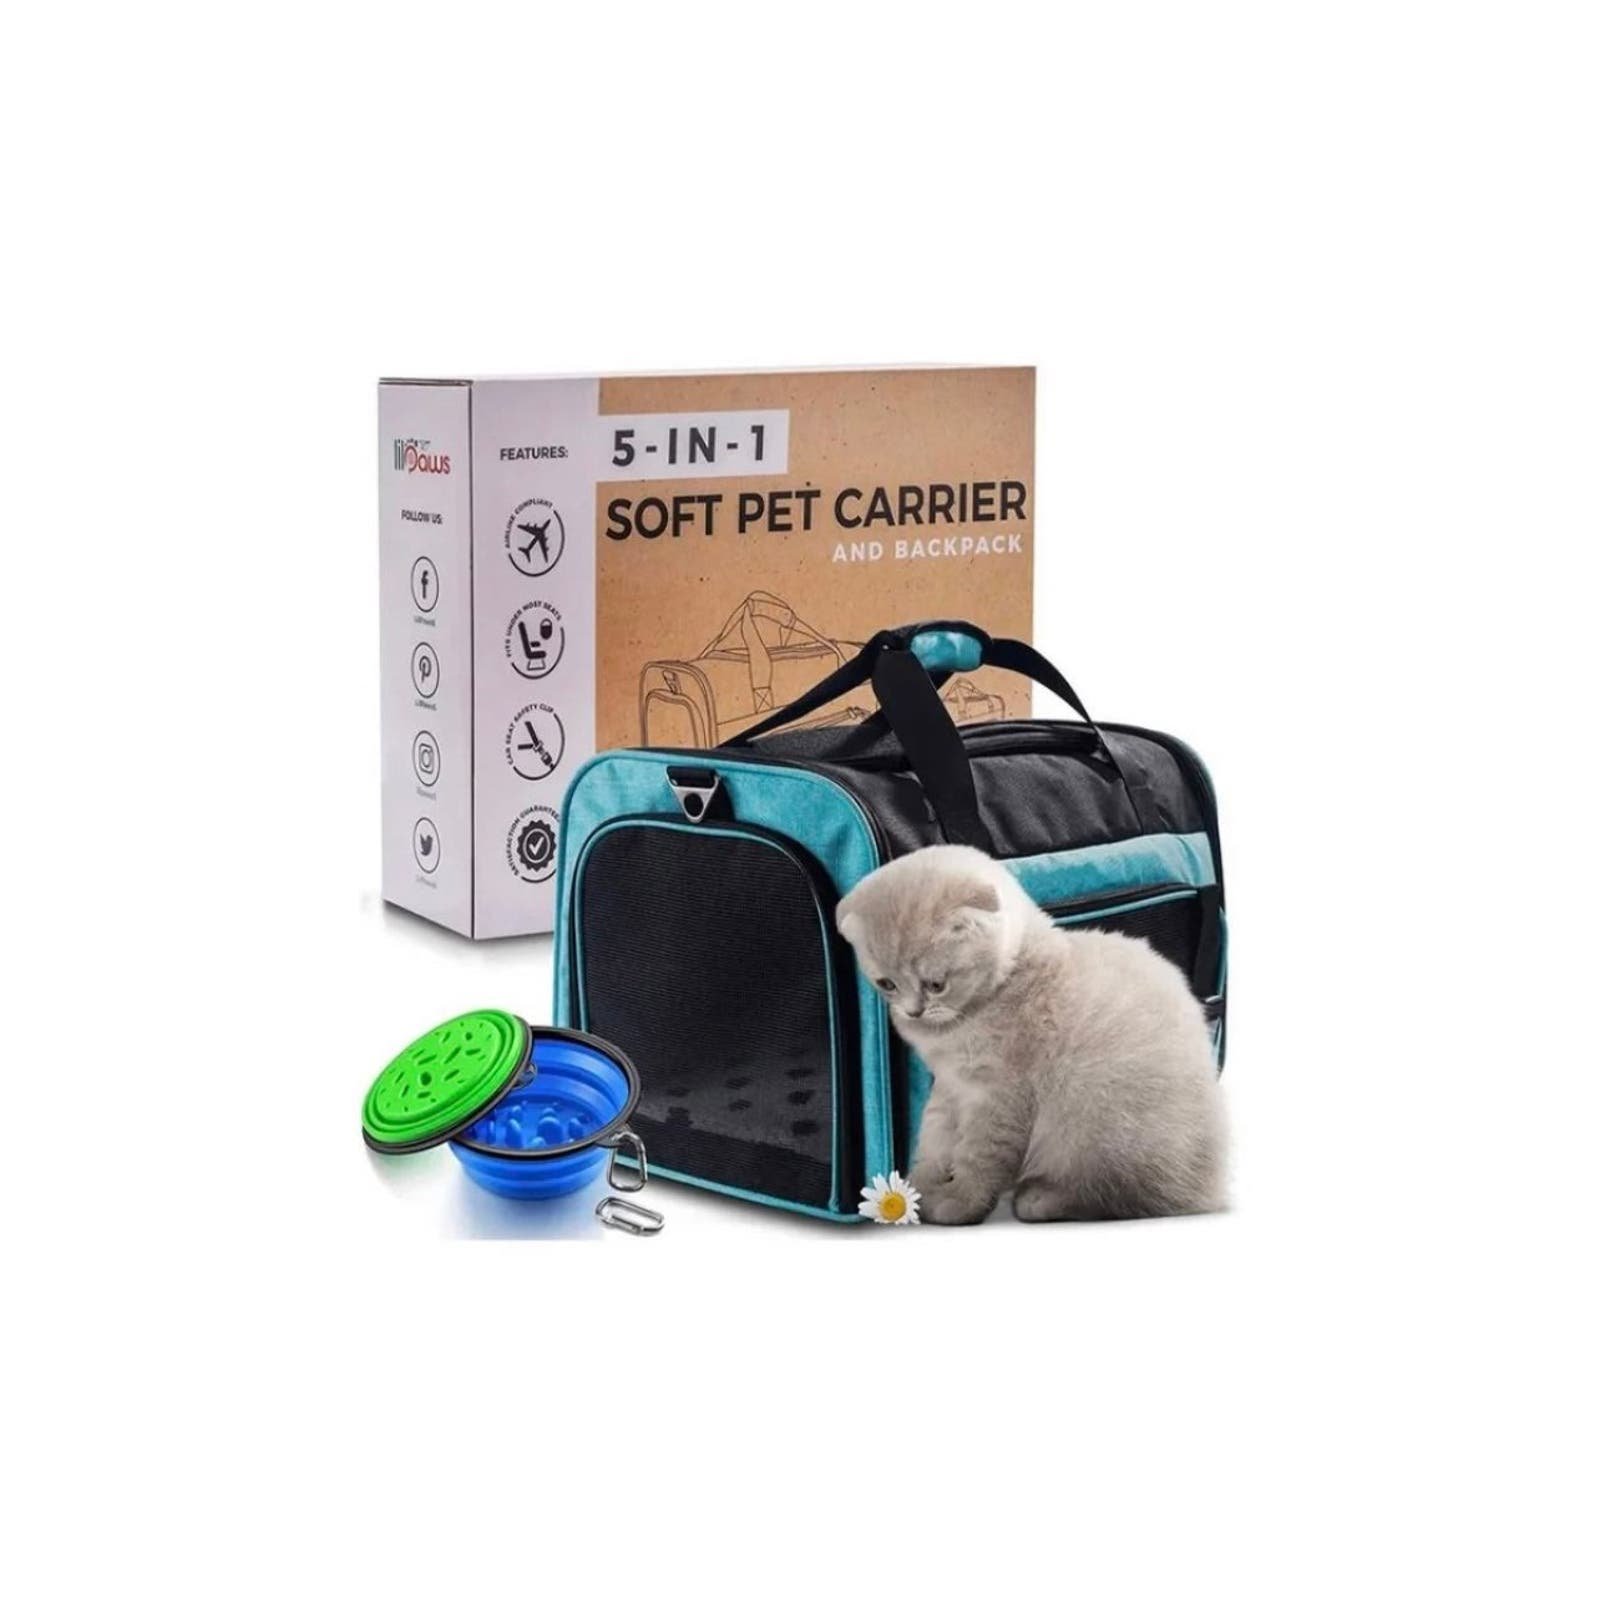 Brand new small pet carrier 9319nk6vt